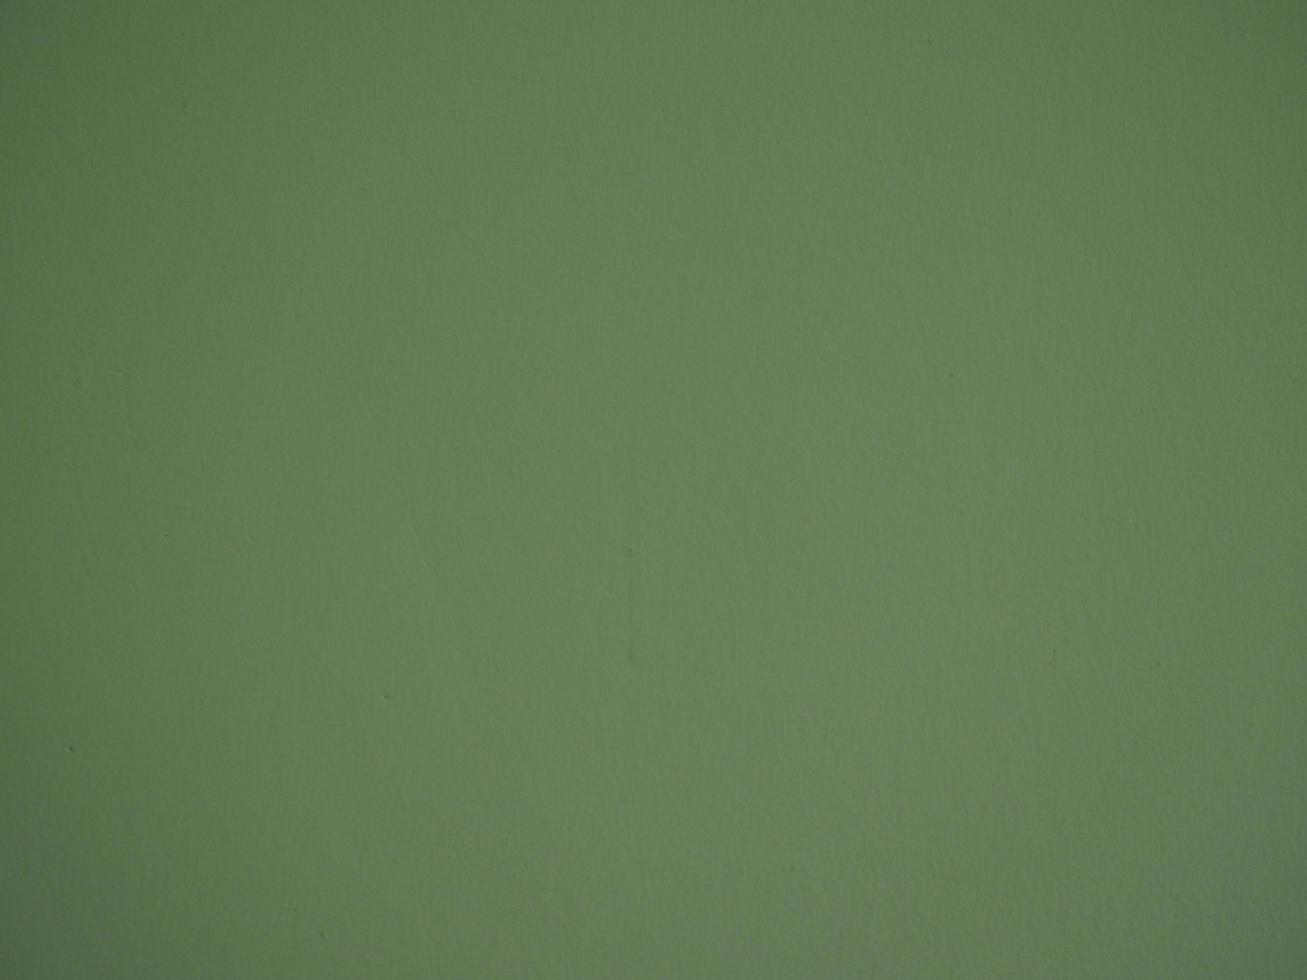 peindre la couleur verte sur le mur de ciment rugueux surface abstraite texture béton fond matériel photo